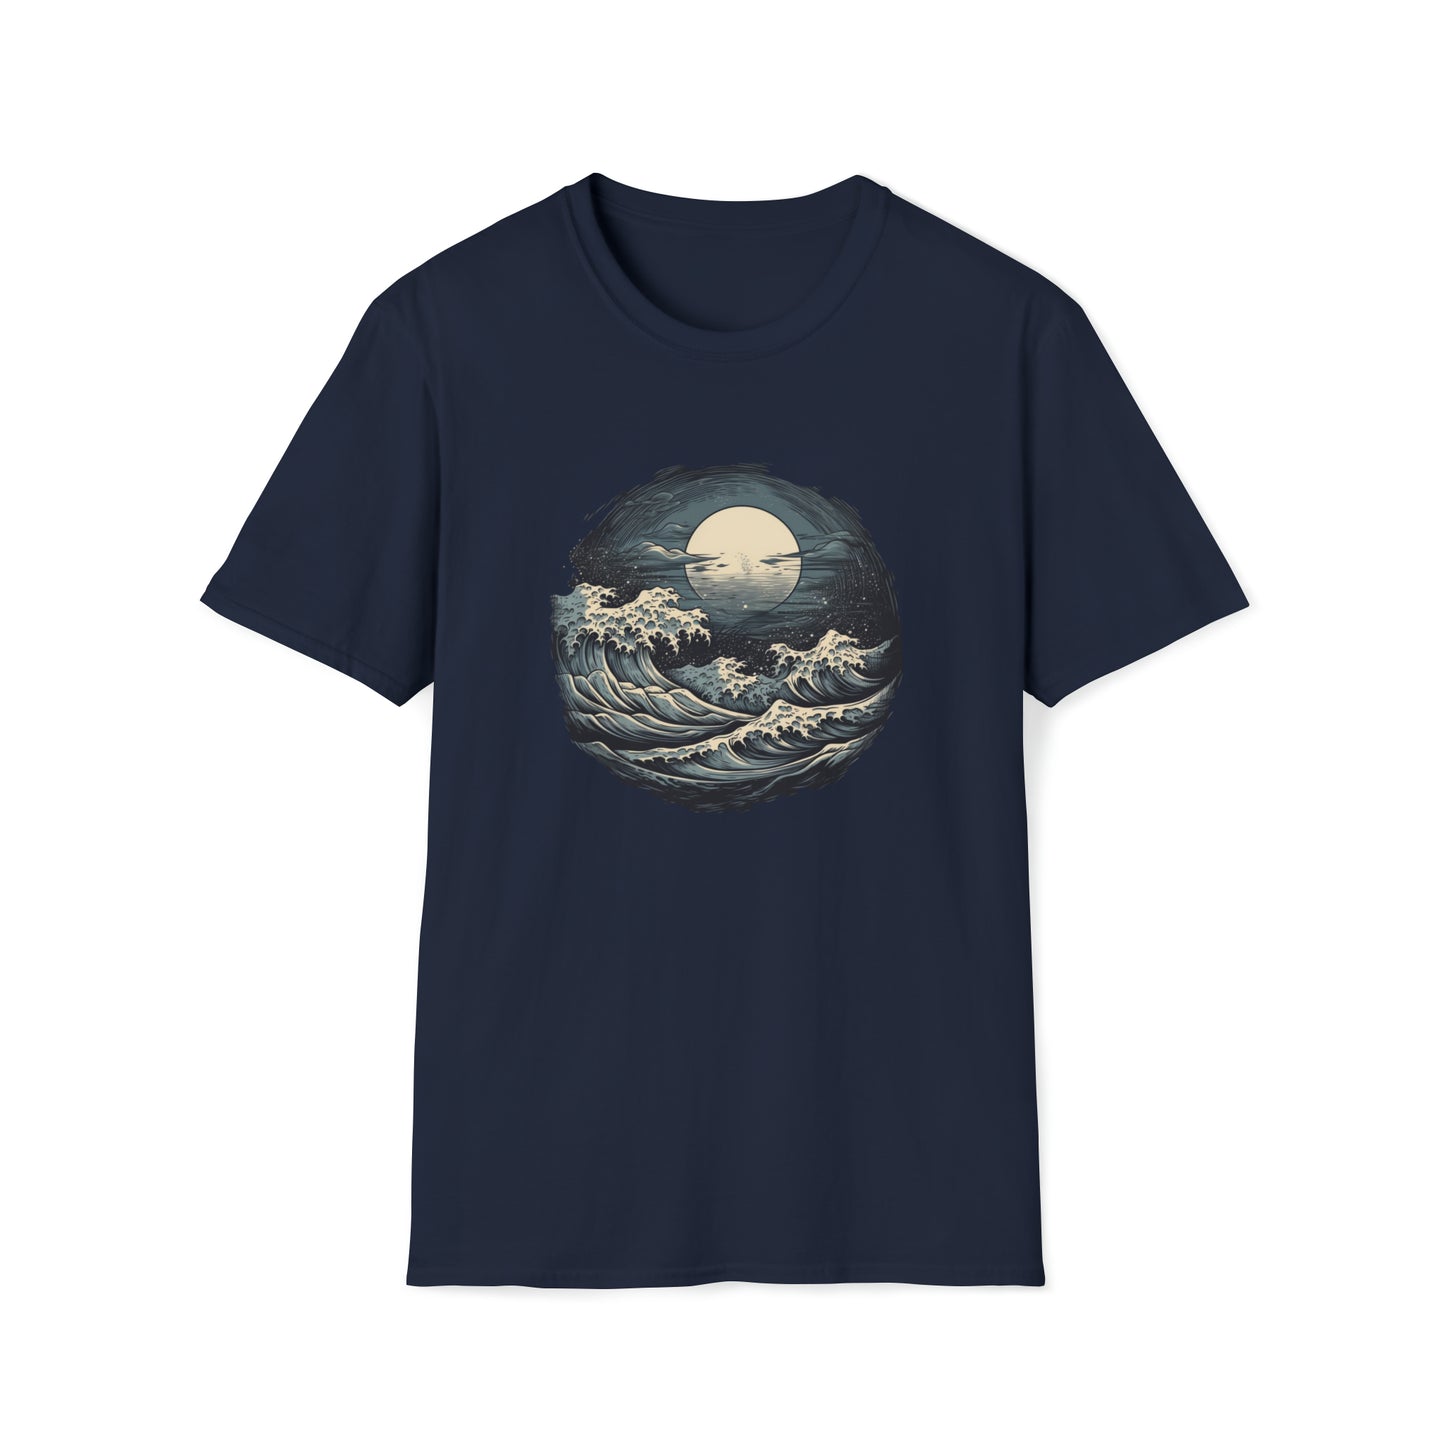 Moonrise T-shirt - Tortuna